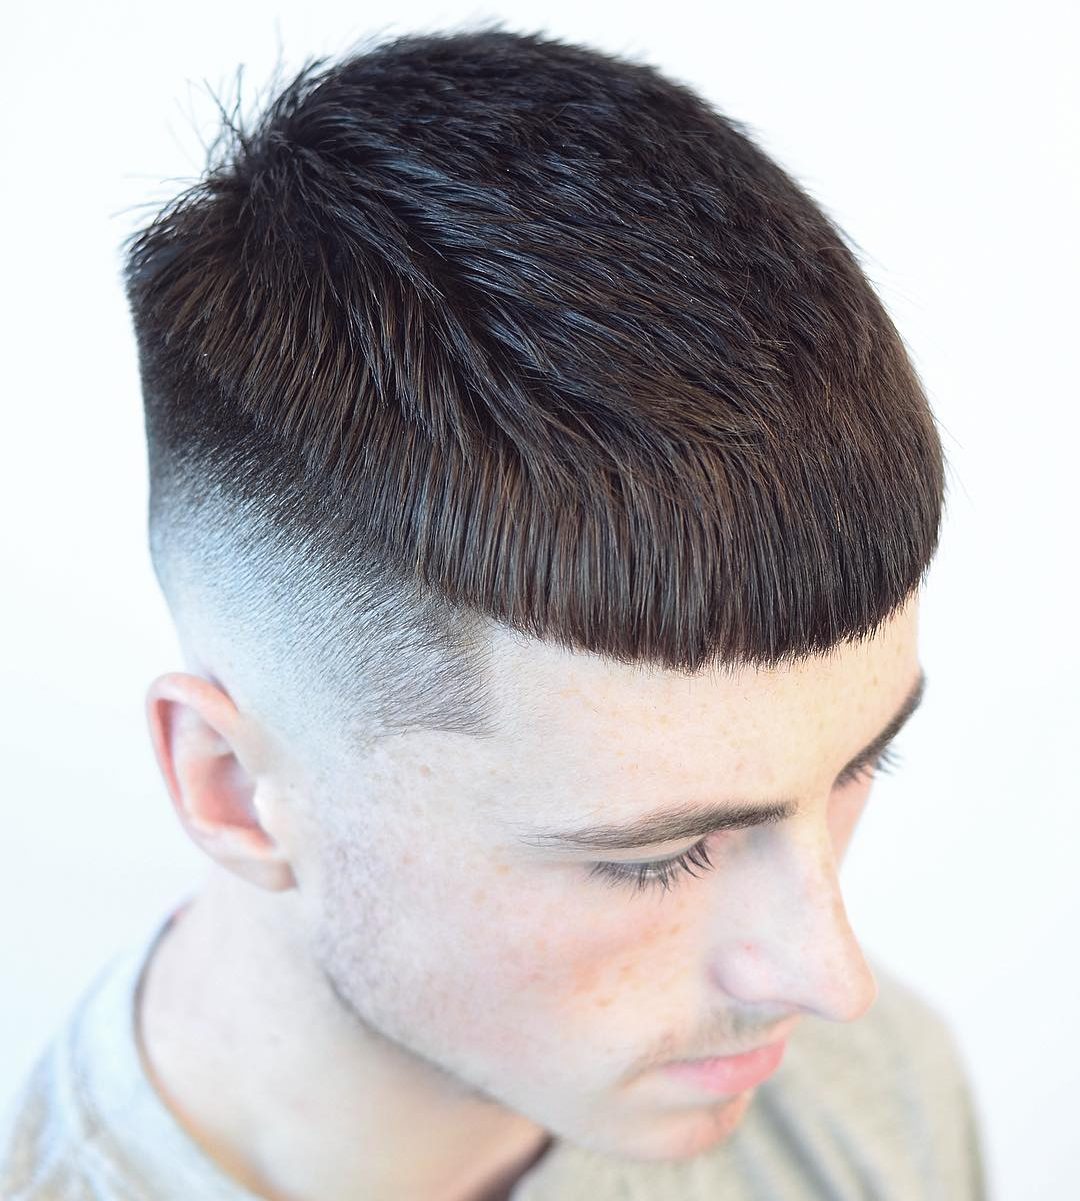 لأصحاب الشعر القصير.. أفضل قصات الشعر لعام 2018 Chris_barbercode-short-haircuts-for-men-crop-thick-fringe-e1511983487129